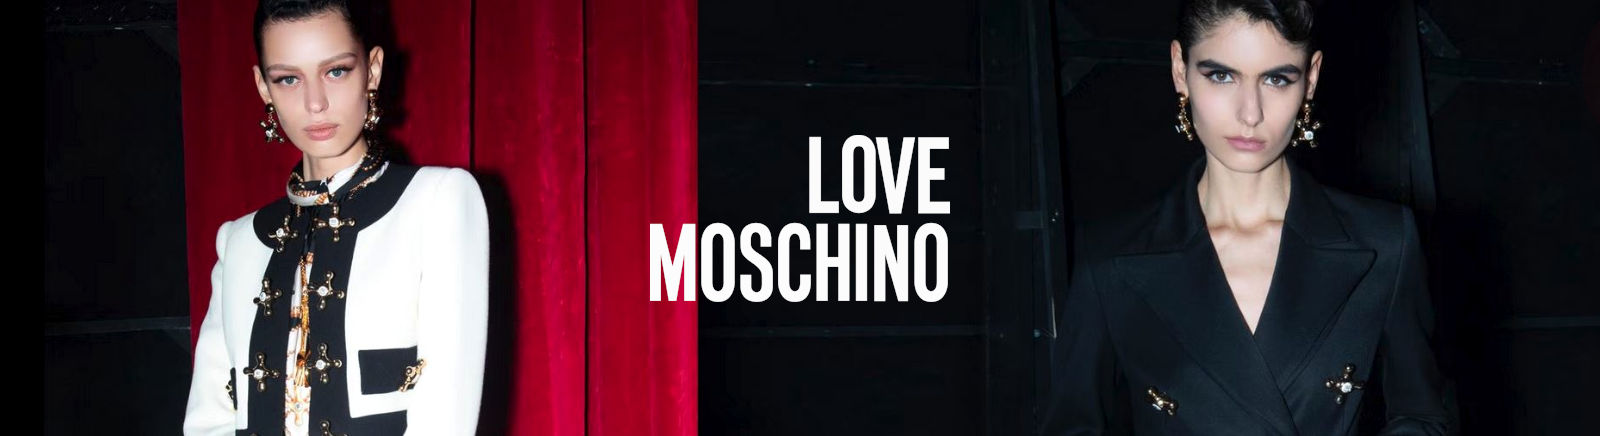 Love Moschino Damenschuhe online bestellen im Prange Schuhe Shop